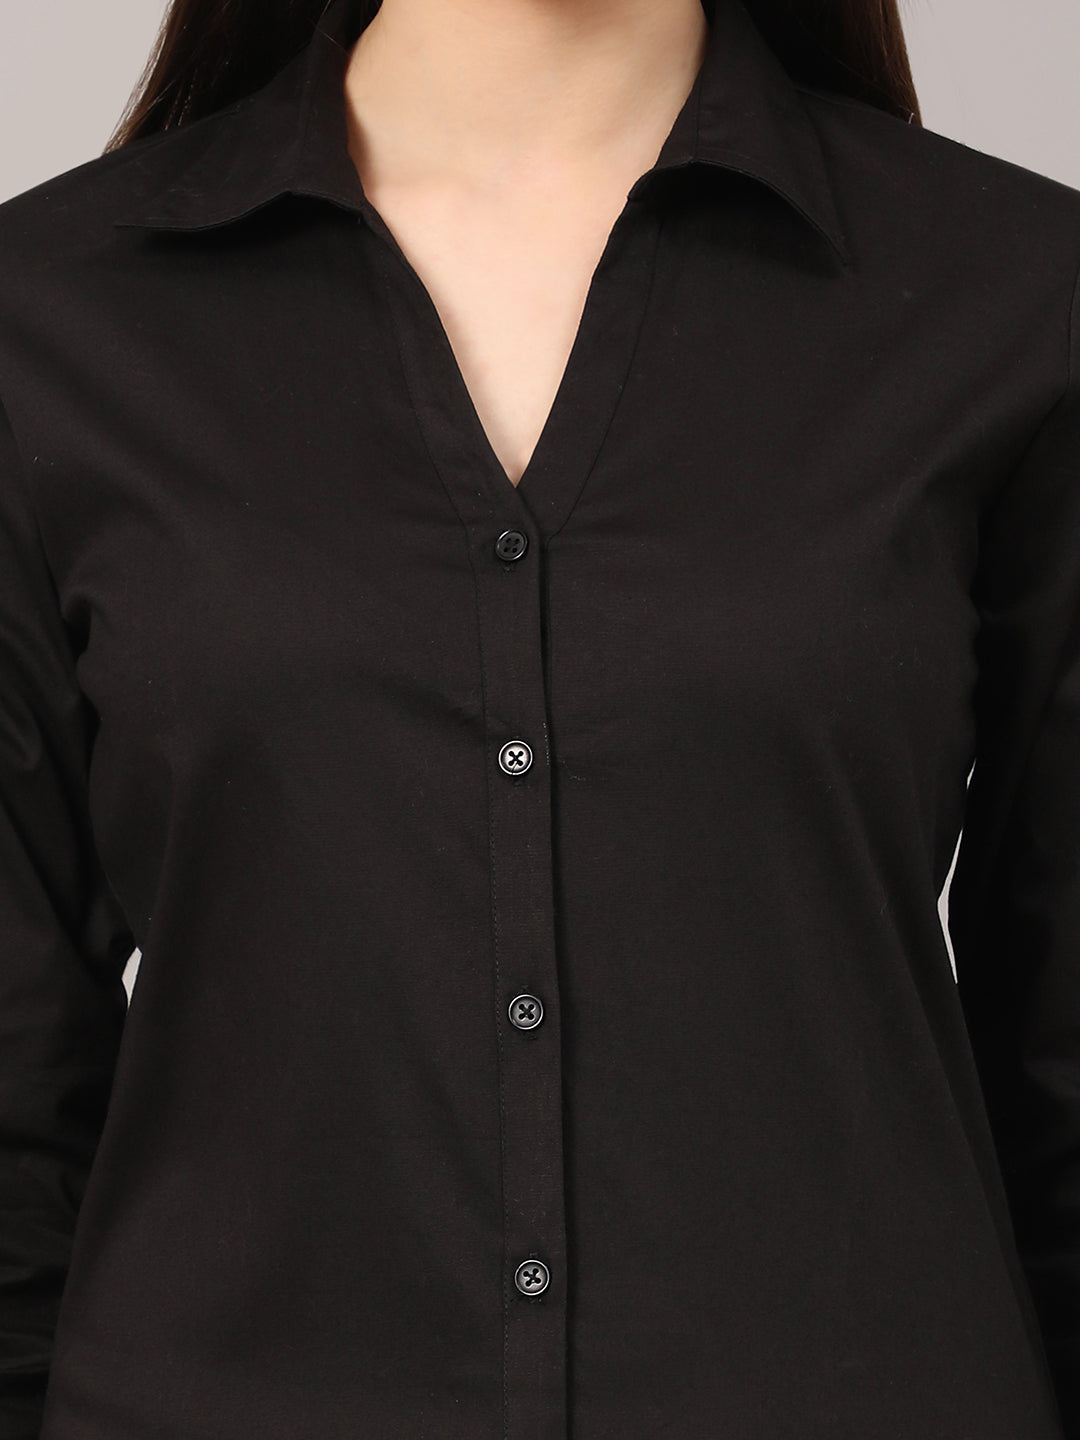 Black Slim Fit Formal Solid Shirt